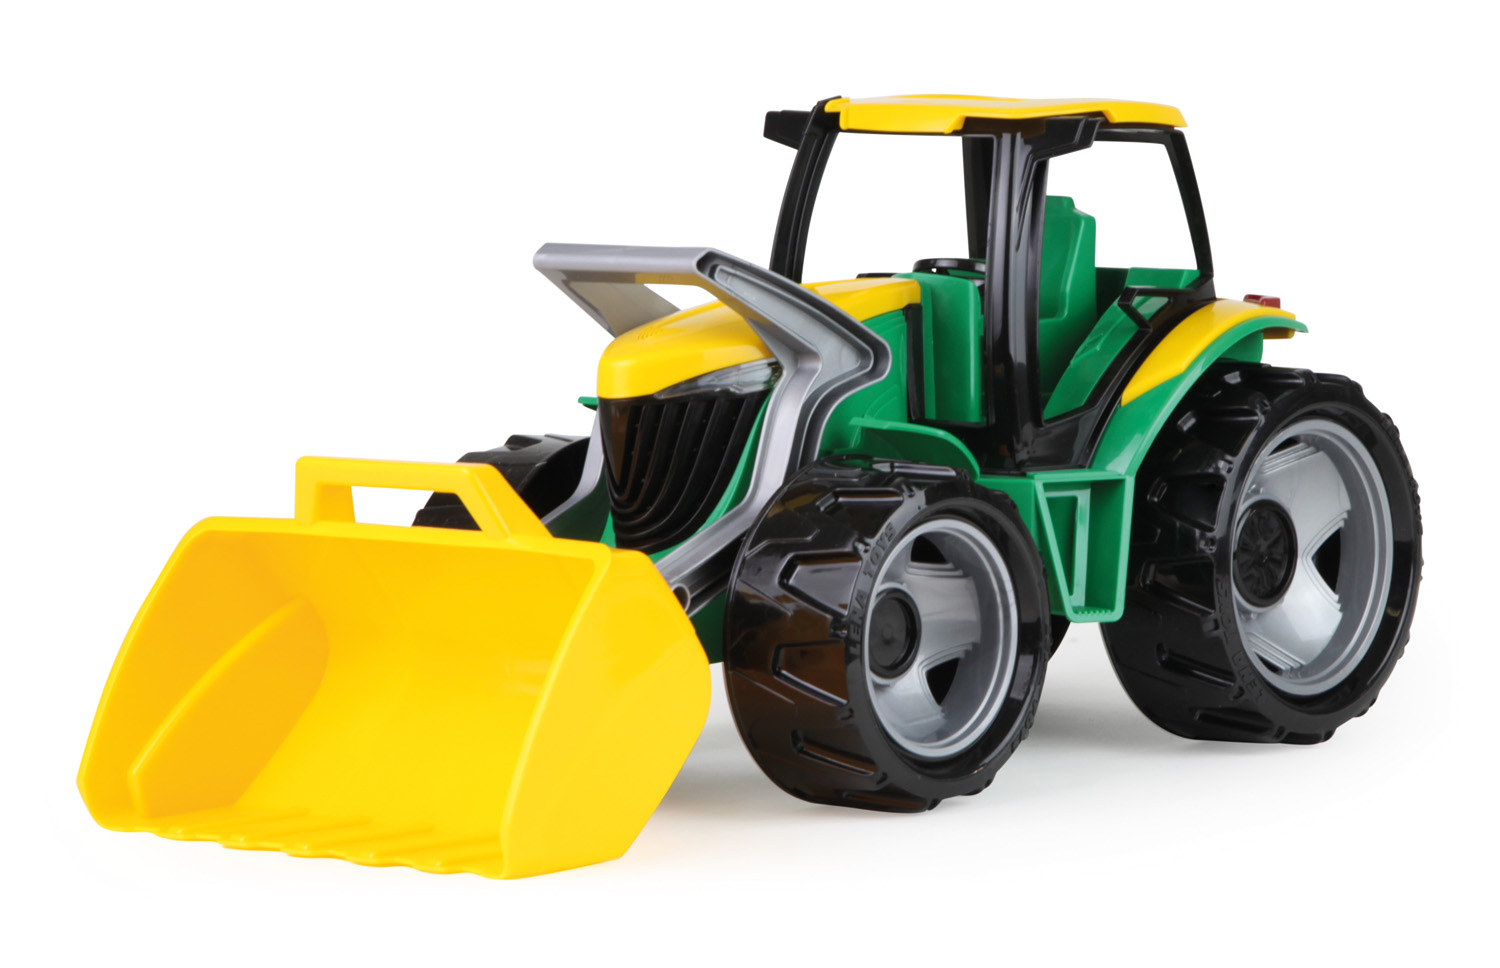 MAXI Traktor velký se lžící  nakladačem zelenožlutý 70 cm 